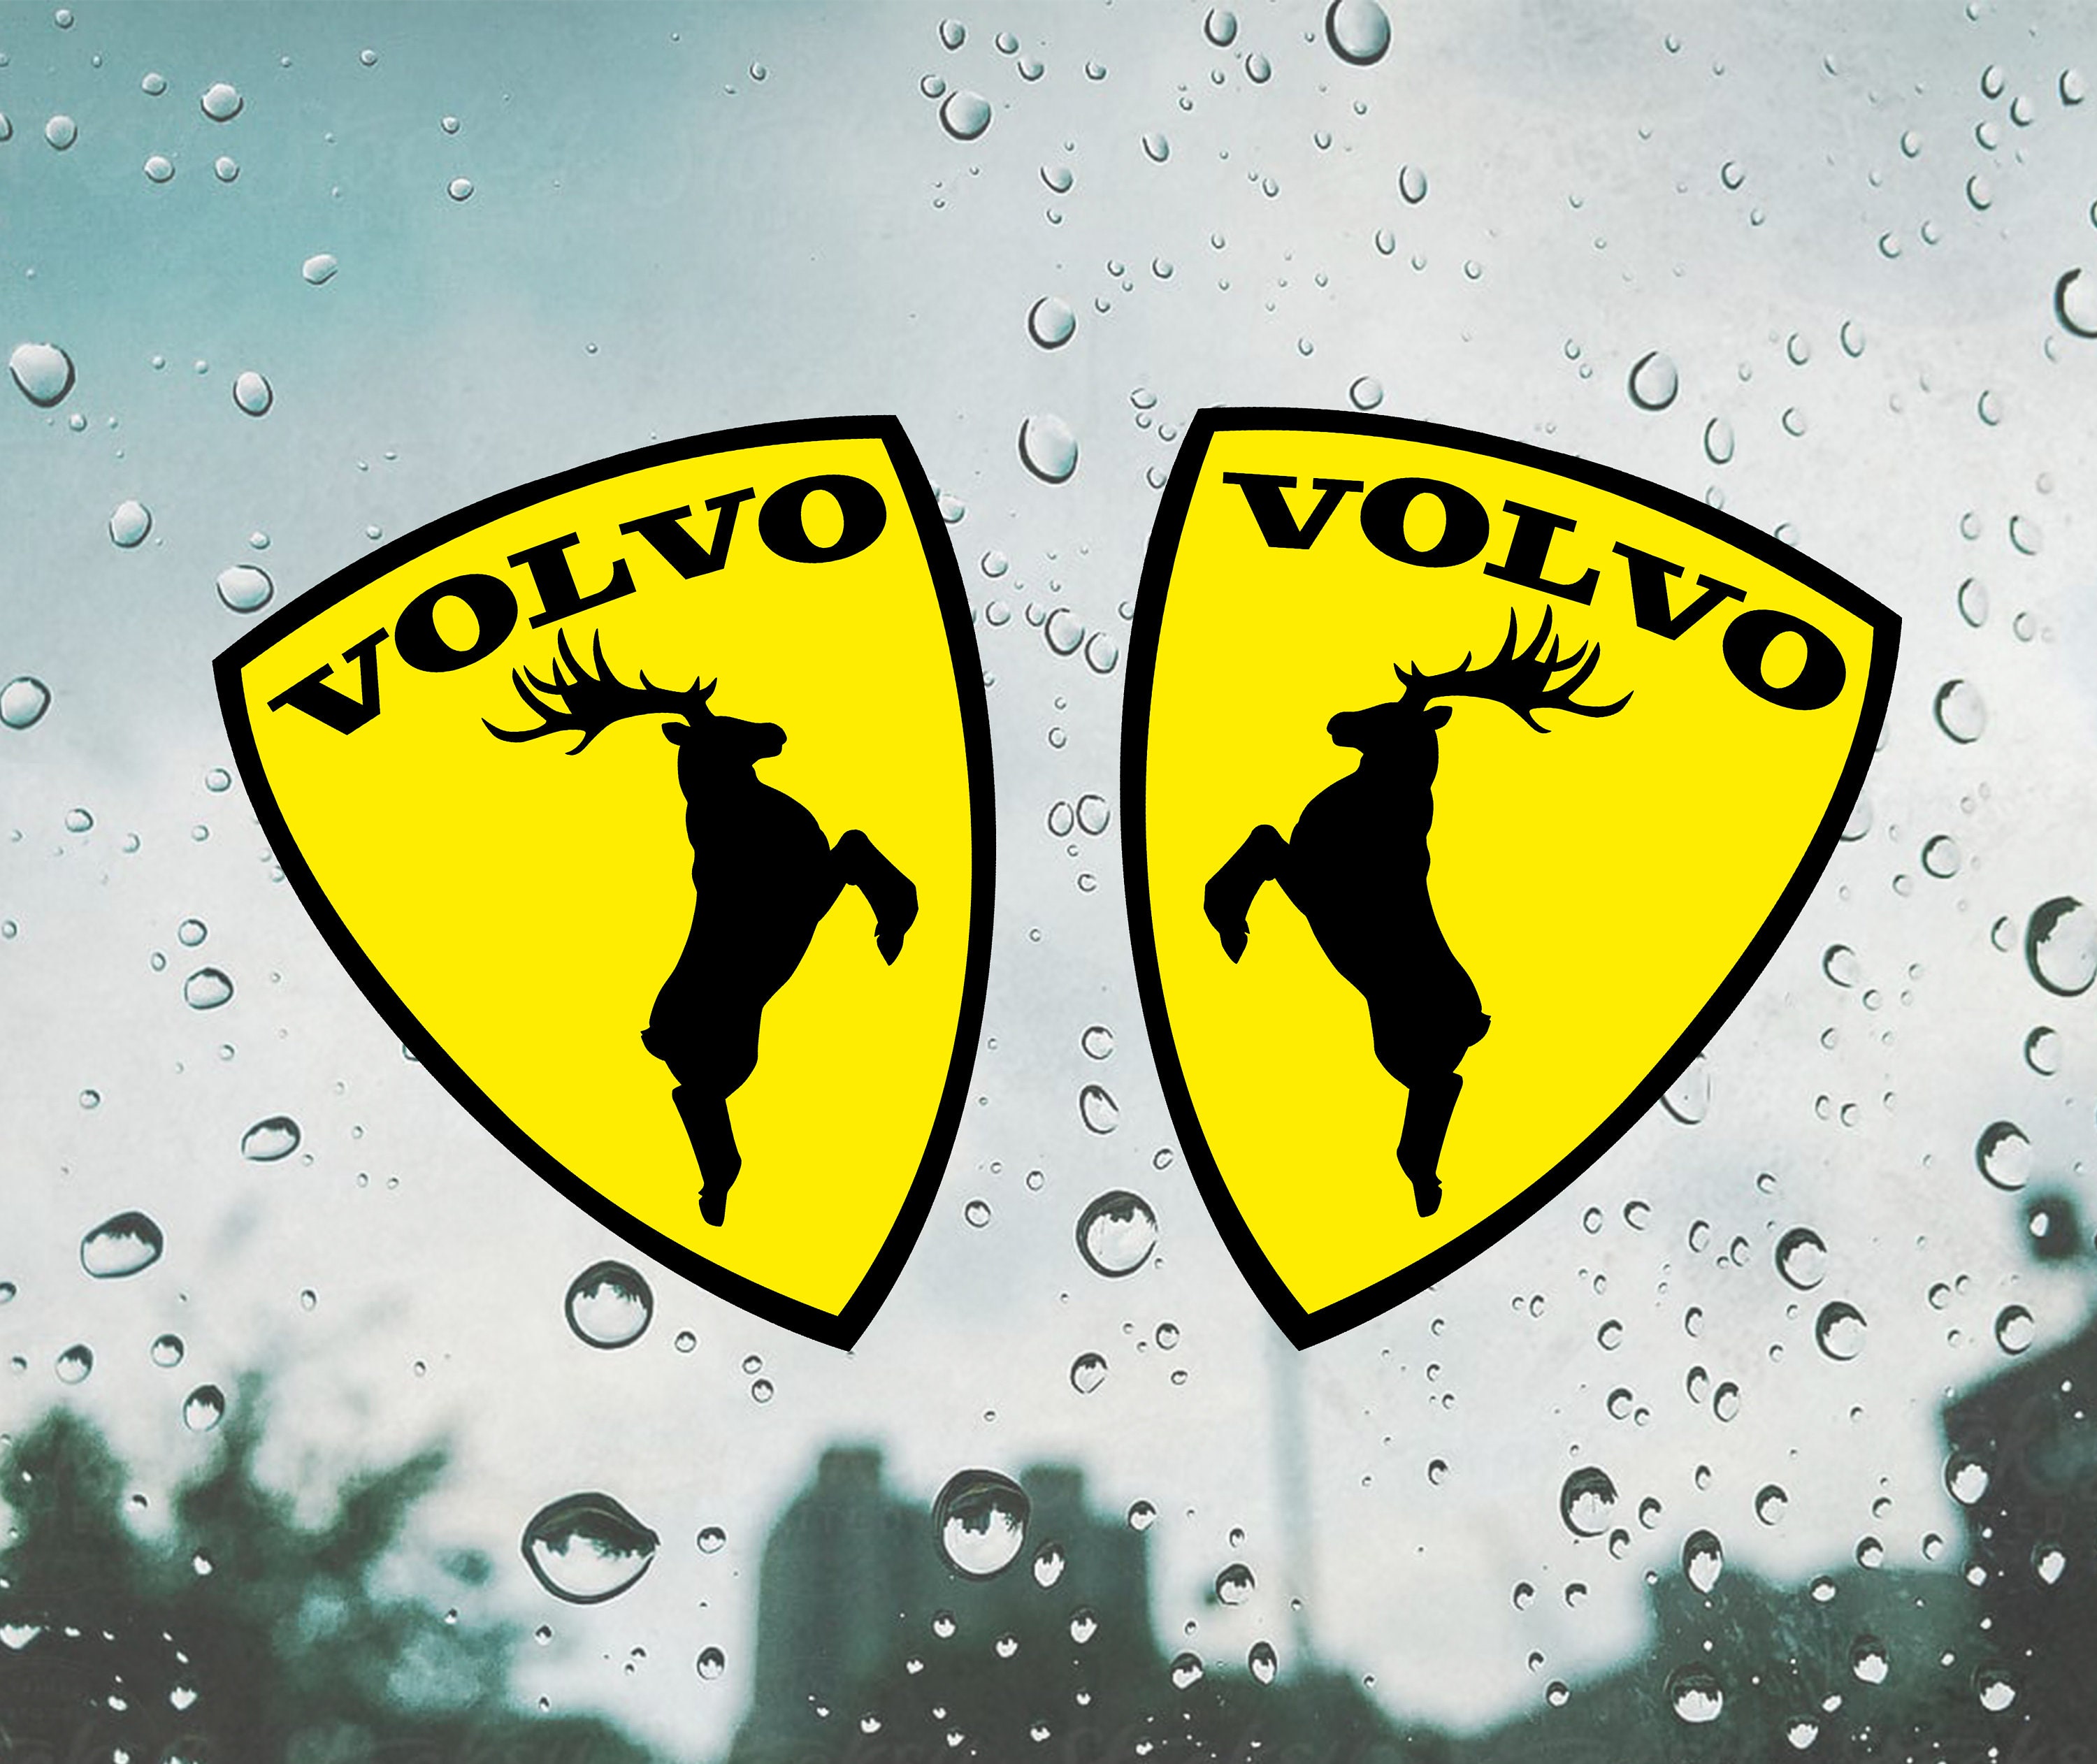 Volvo sticker / decal Car sticker / volvo elk sticker / decal / window  moose sticker 2pcs.